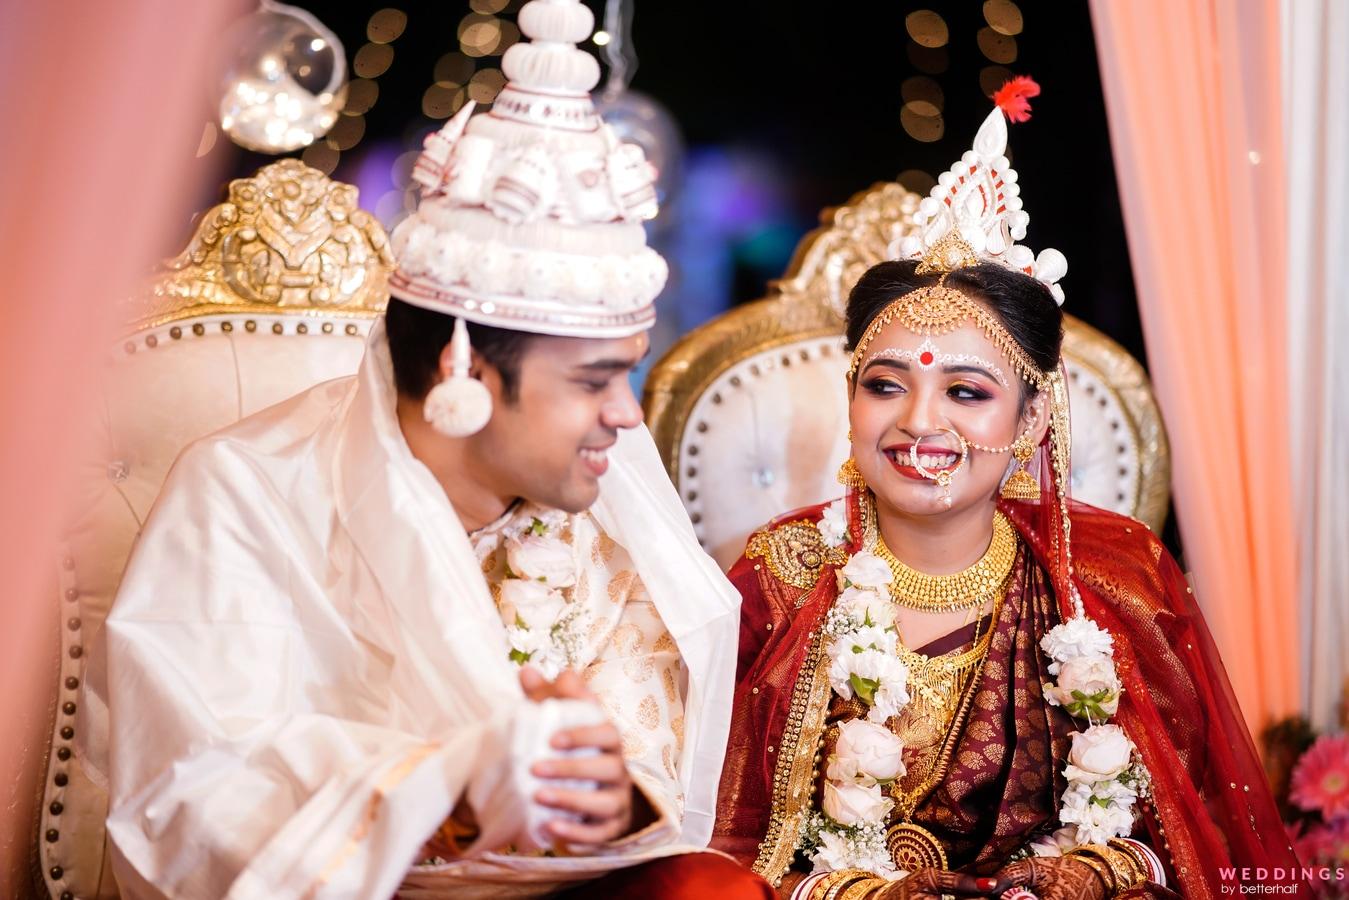 Pin by Ipshita on Indian wedding bride | Indian wedding bride, Indian  wedding poses, Bride photography poses